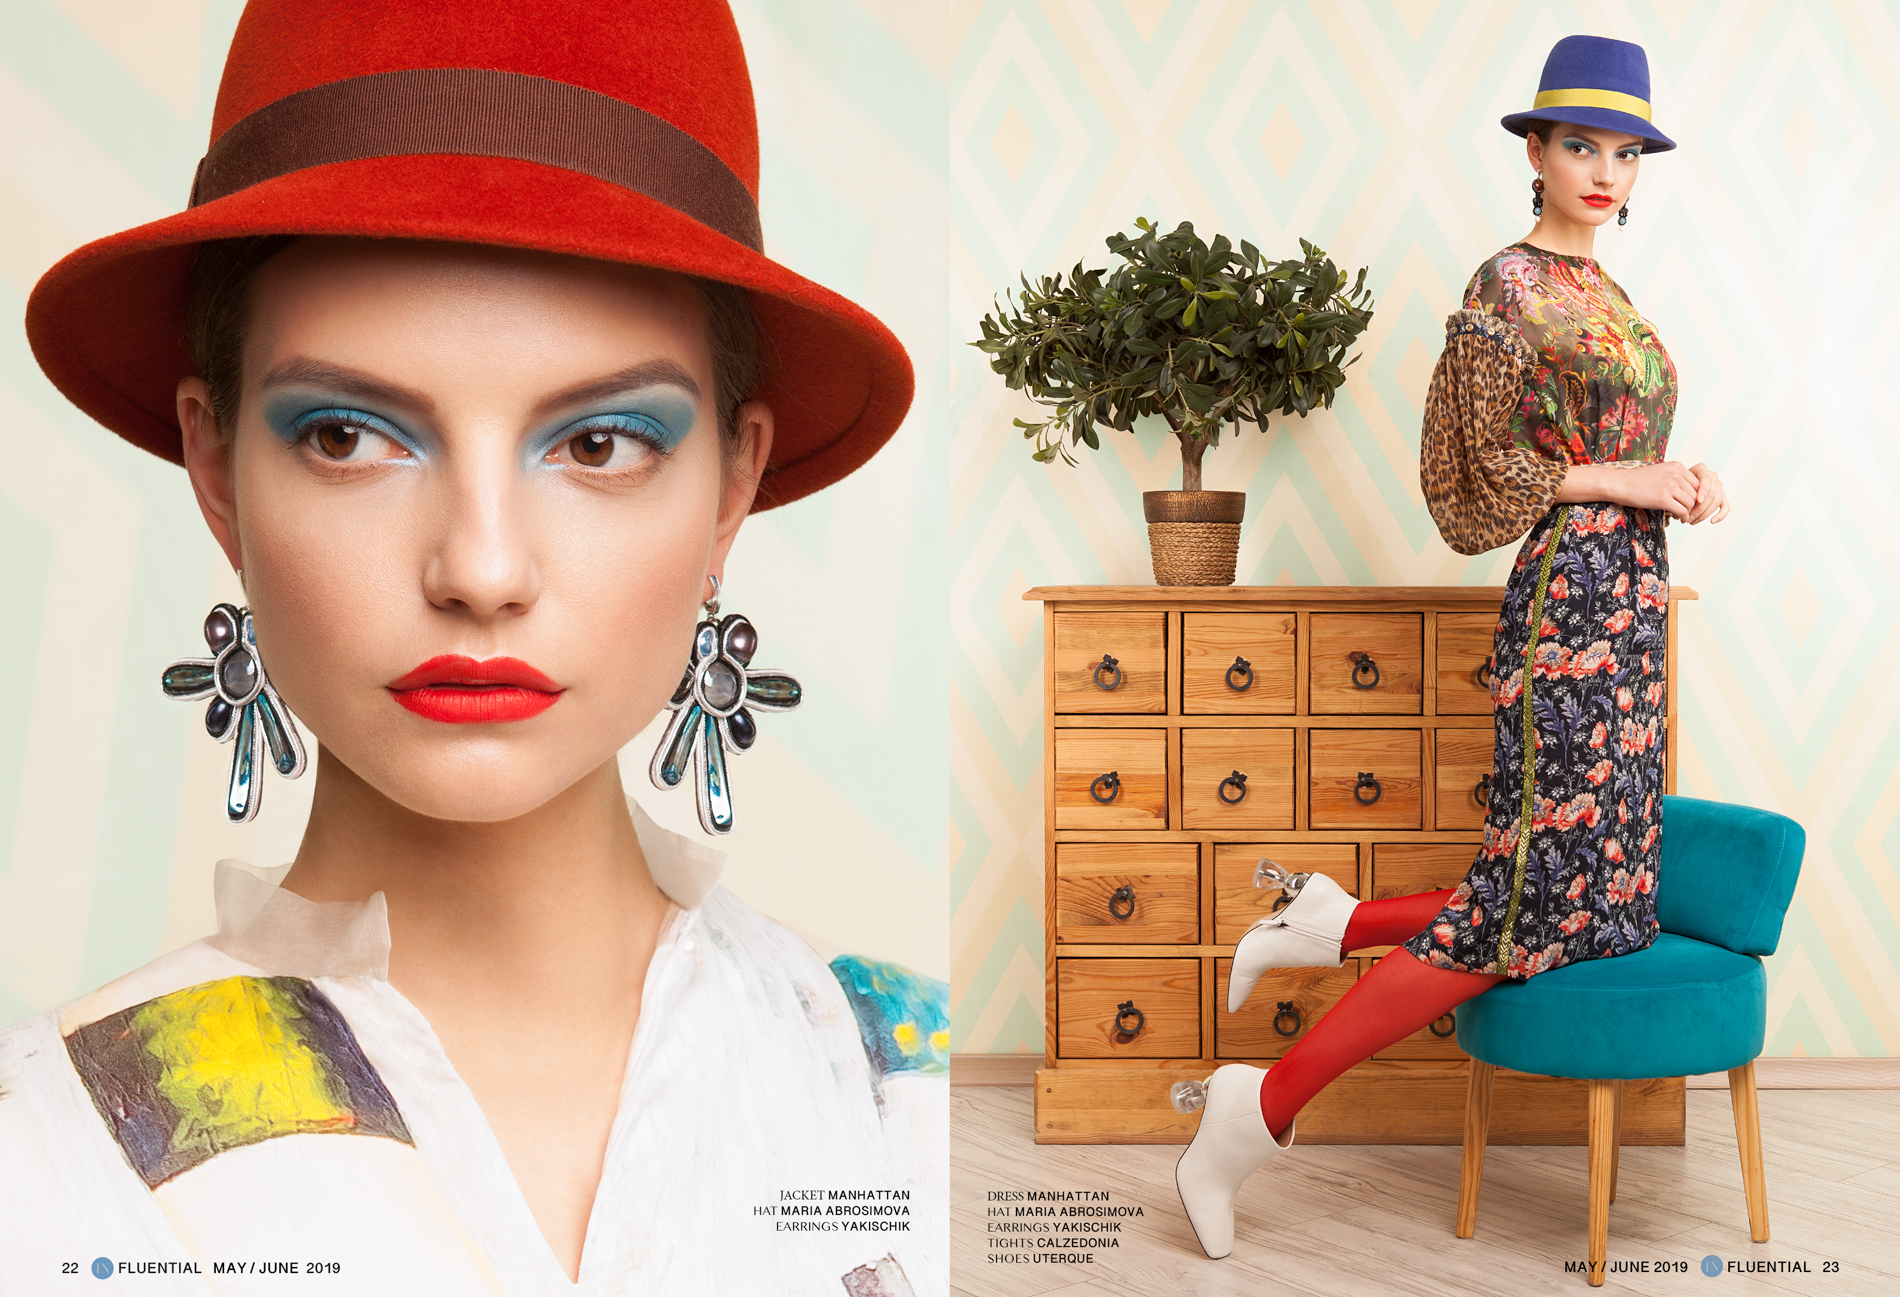 Alexei magazine models